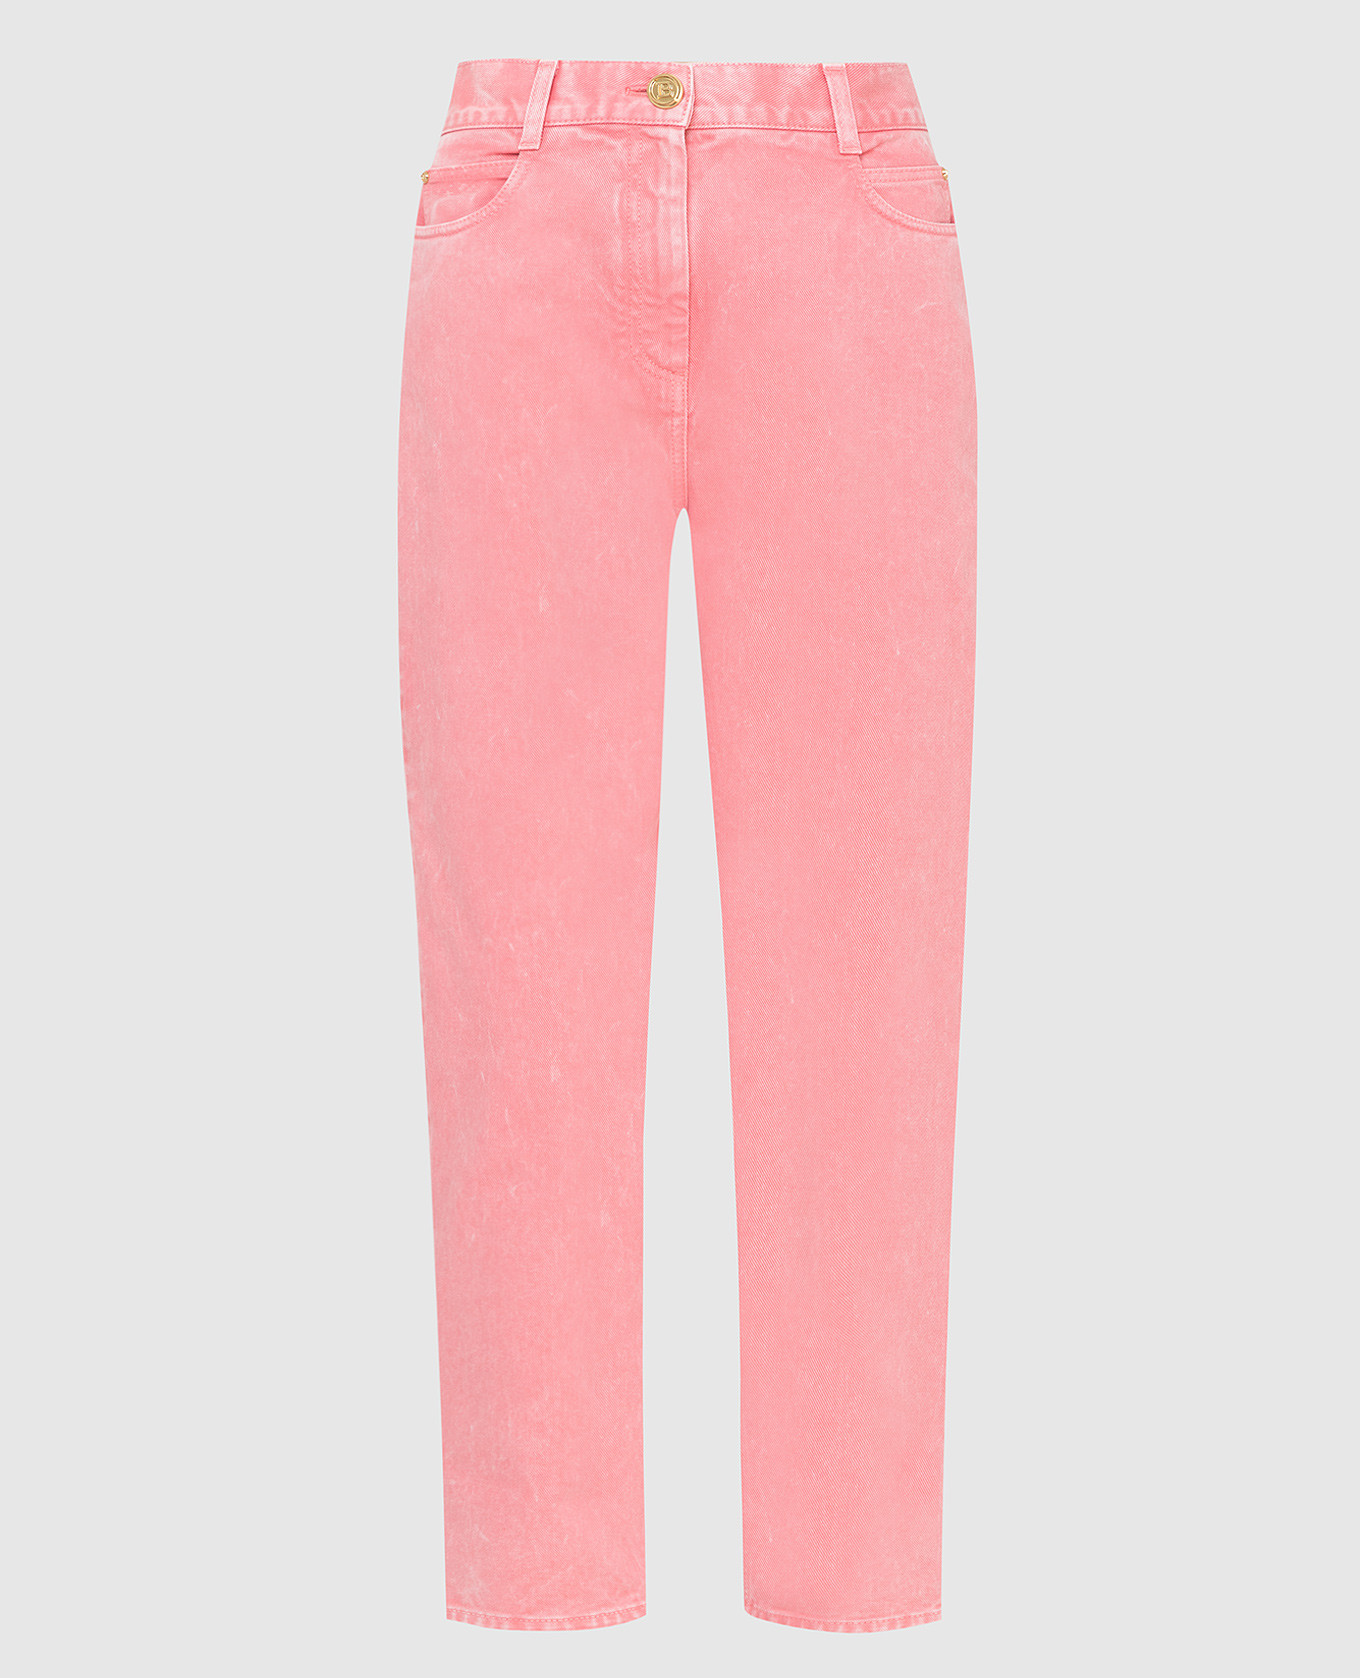 Розовые джинсы